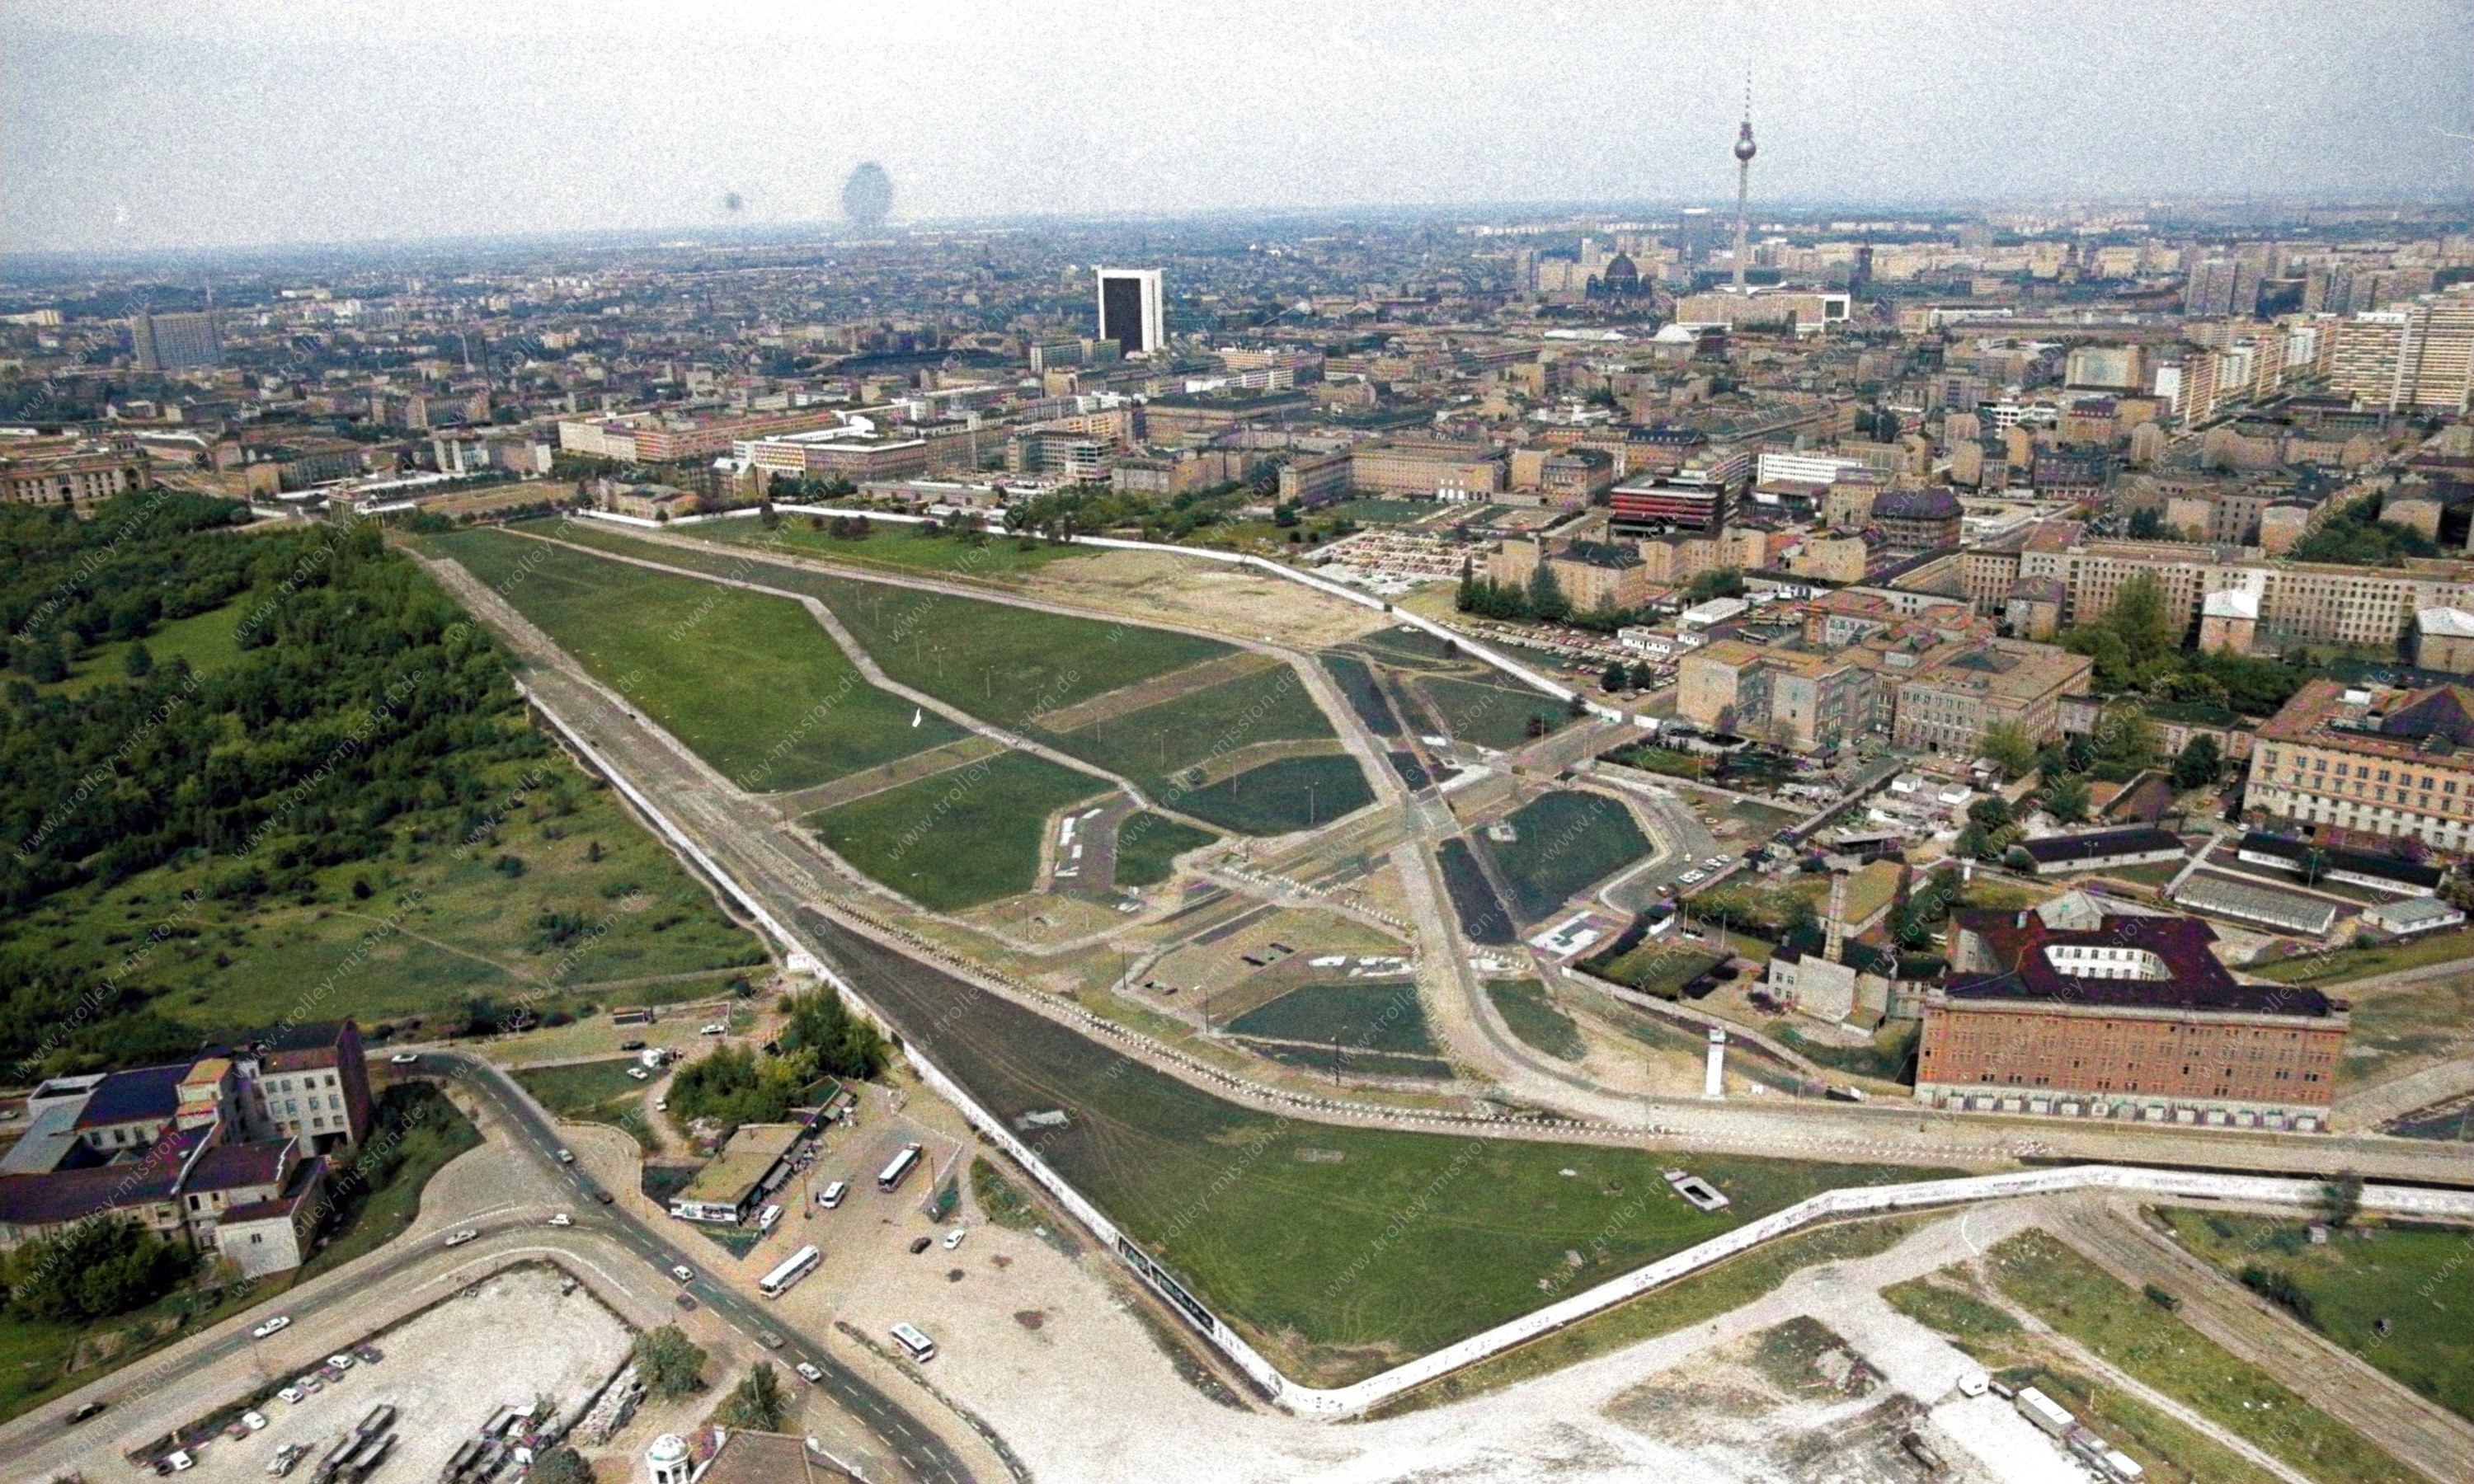 Die Luftaufnahme dokumentiert ein schlimmes Bild der ehemaligen deutsch-deutschen Grenze am 12. Mai 1982, nämlich den riesig großen Grenzstreifen und die Berliner Mauer am Potsdamer Platz.